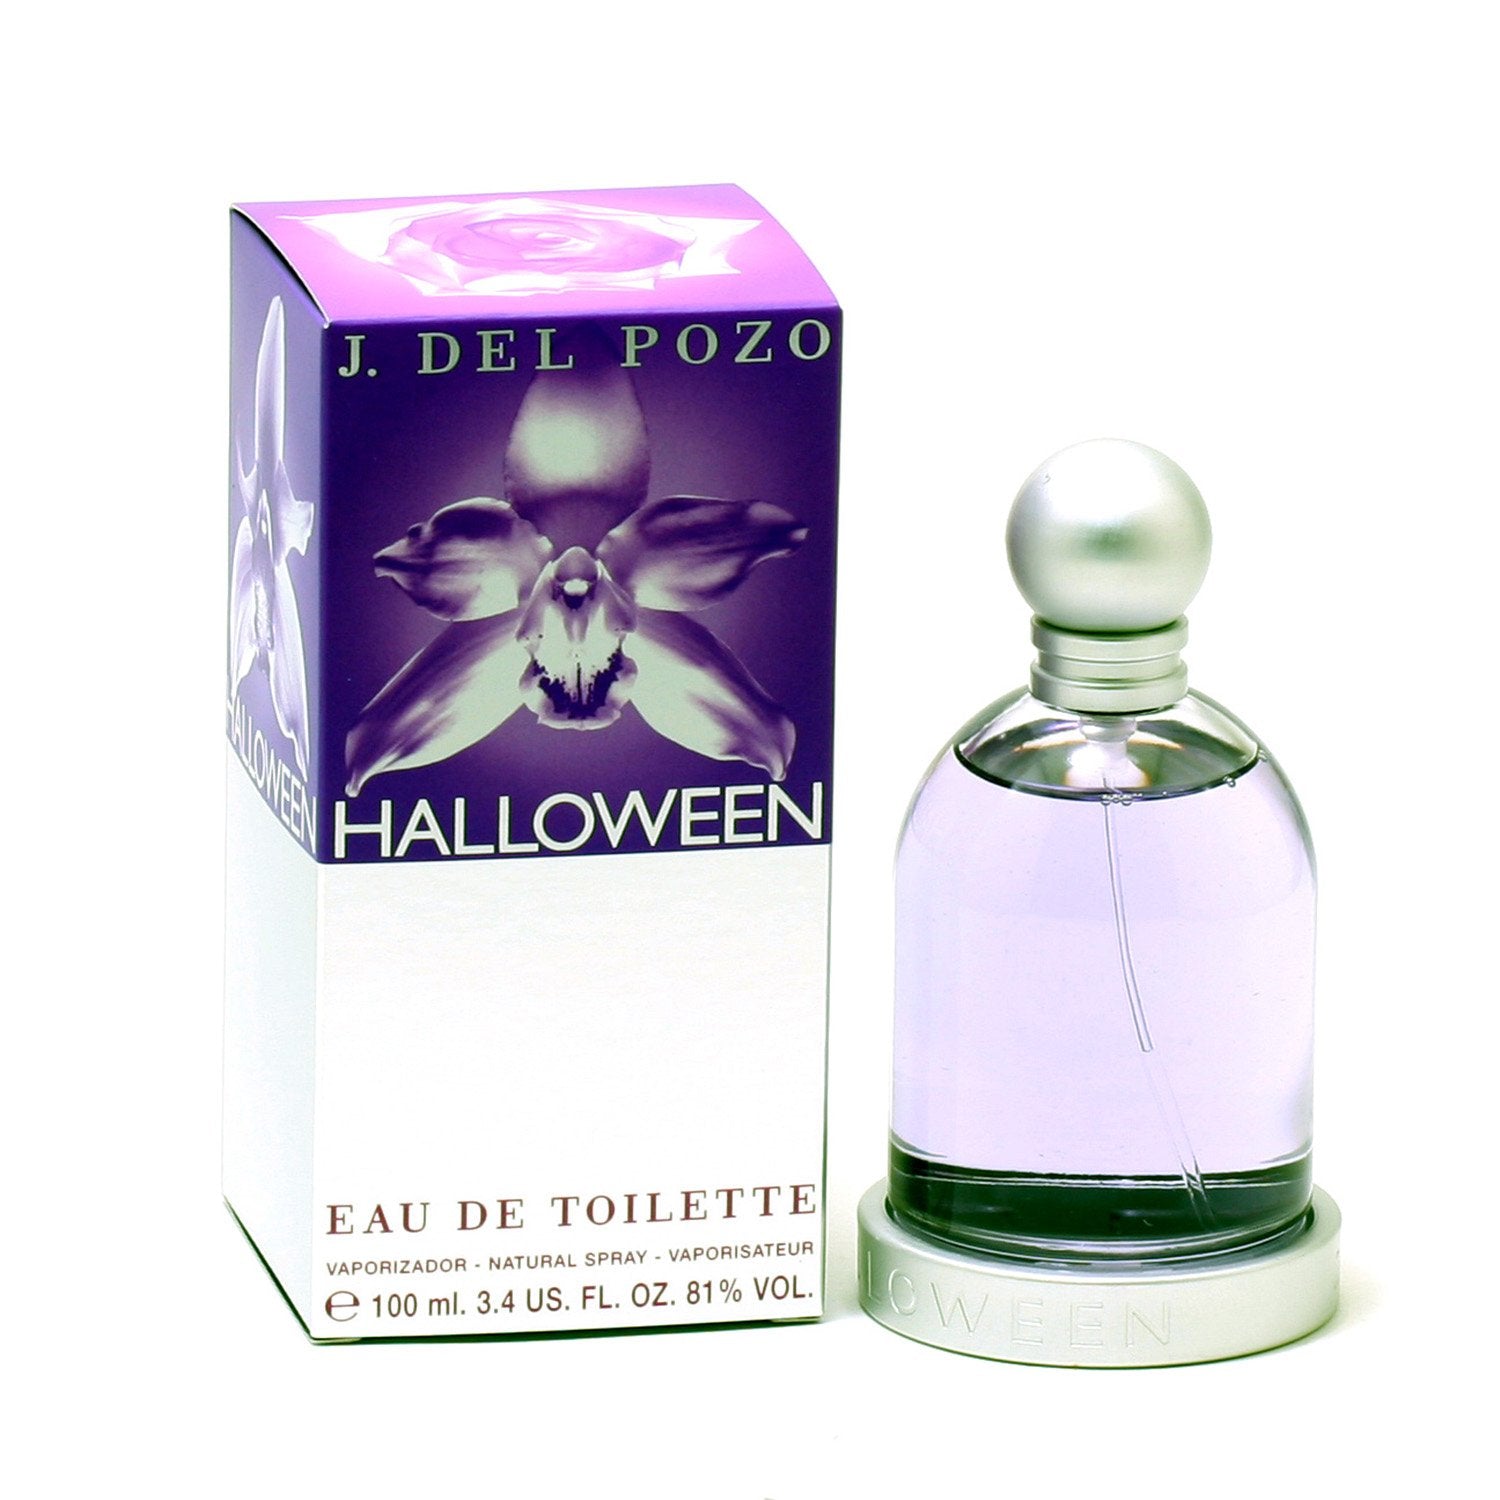 Perfume - HALLOWEEN FOR WOMEN BY DEL POZO - EAU DE TOILETTE SPRAY, 3.4 OZ